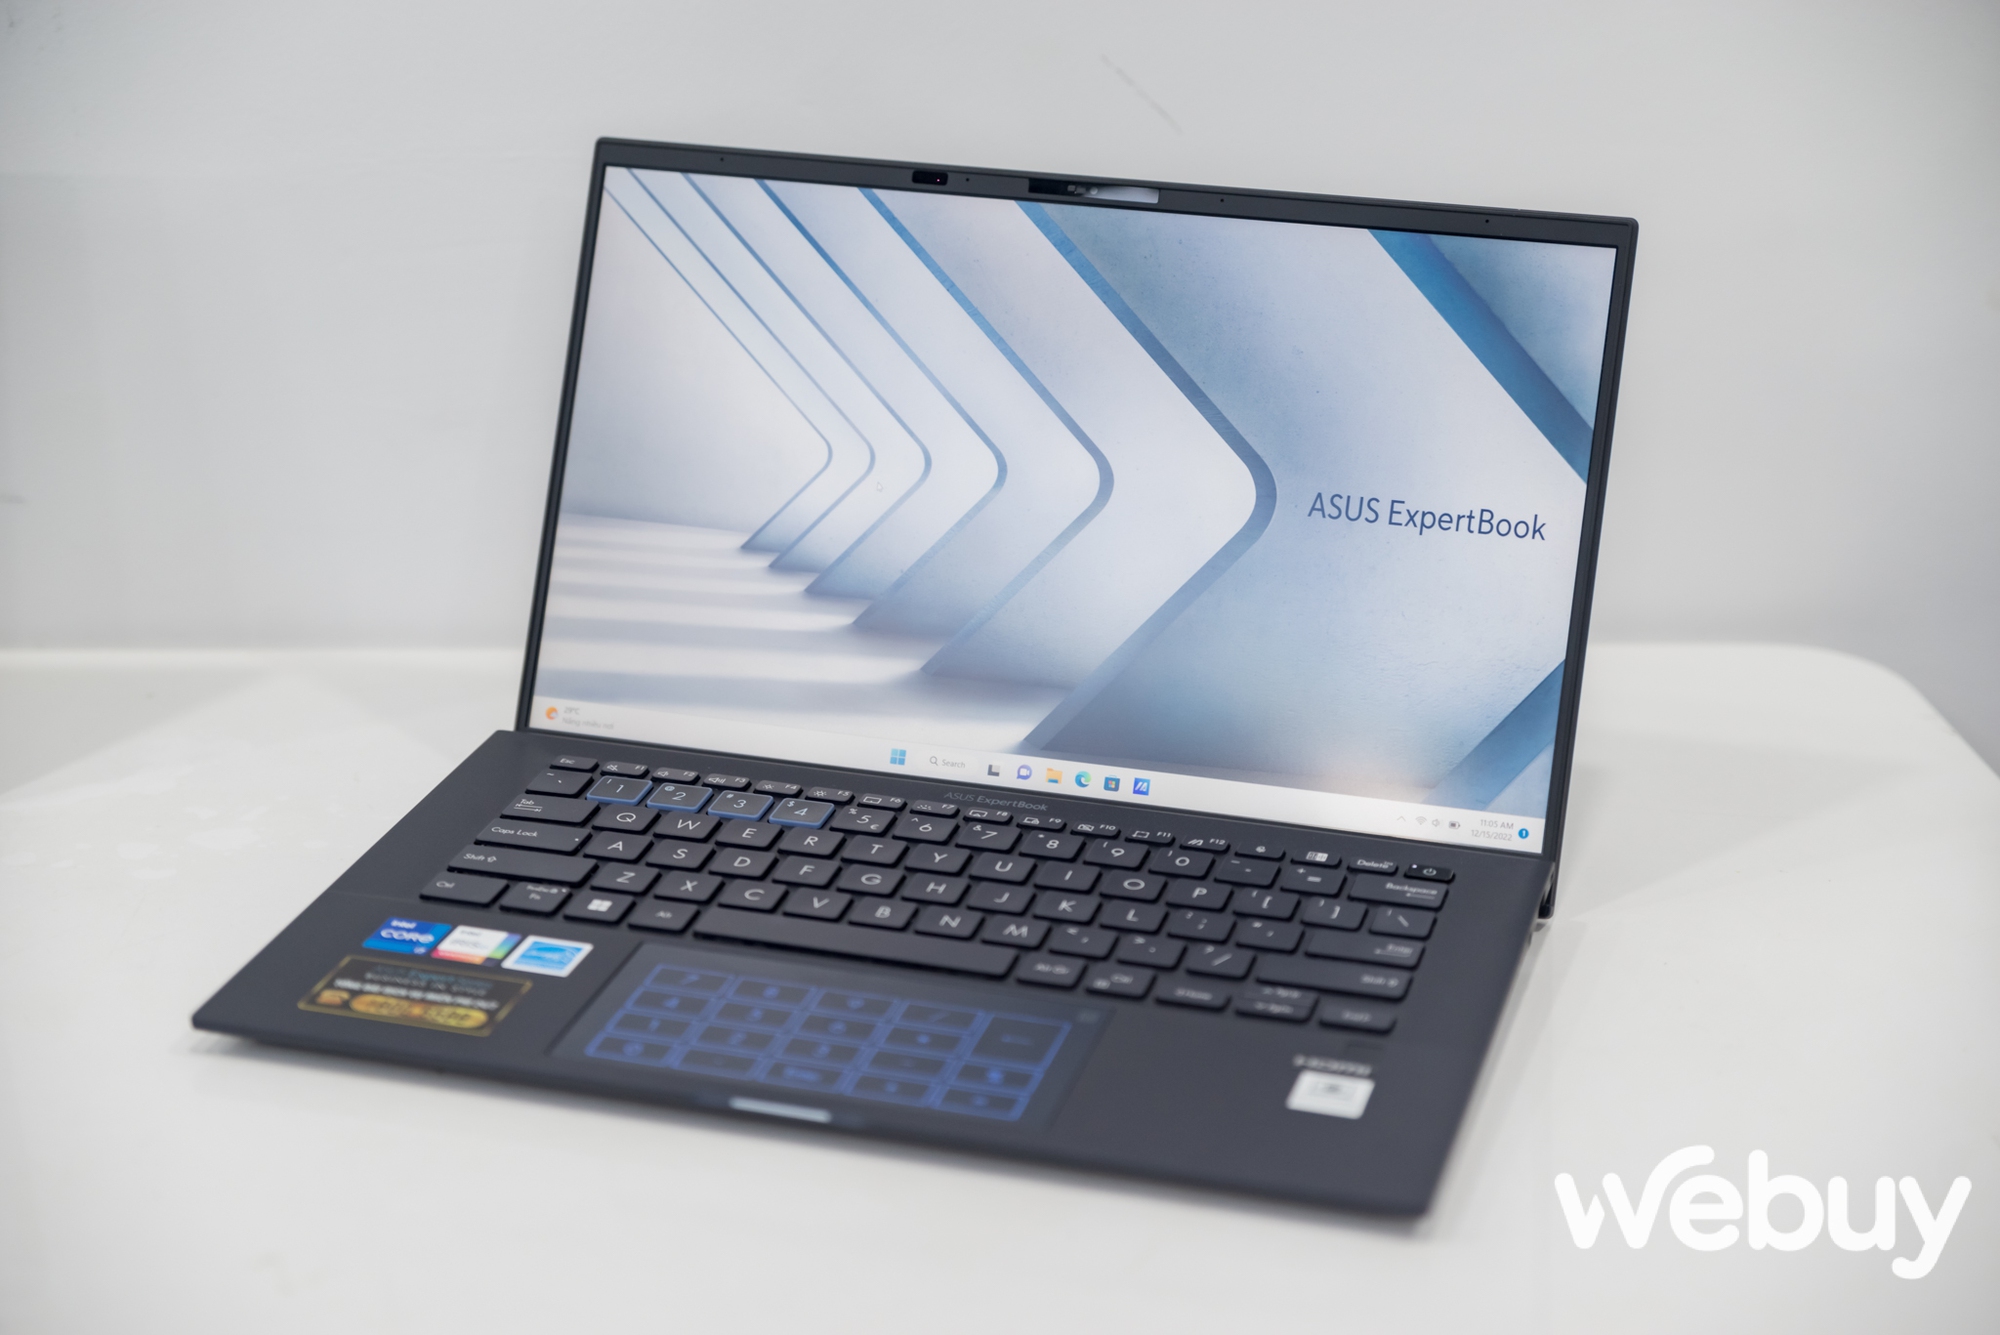 ASUS giới thiệu loạt laptop ExpertBook thế hệ mới, đa dạng lựa chọn hướng đến đối tượng khách hàng doanh nghiệp - Ảnh 15.